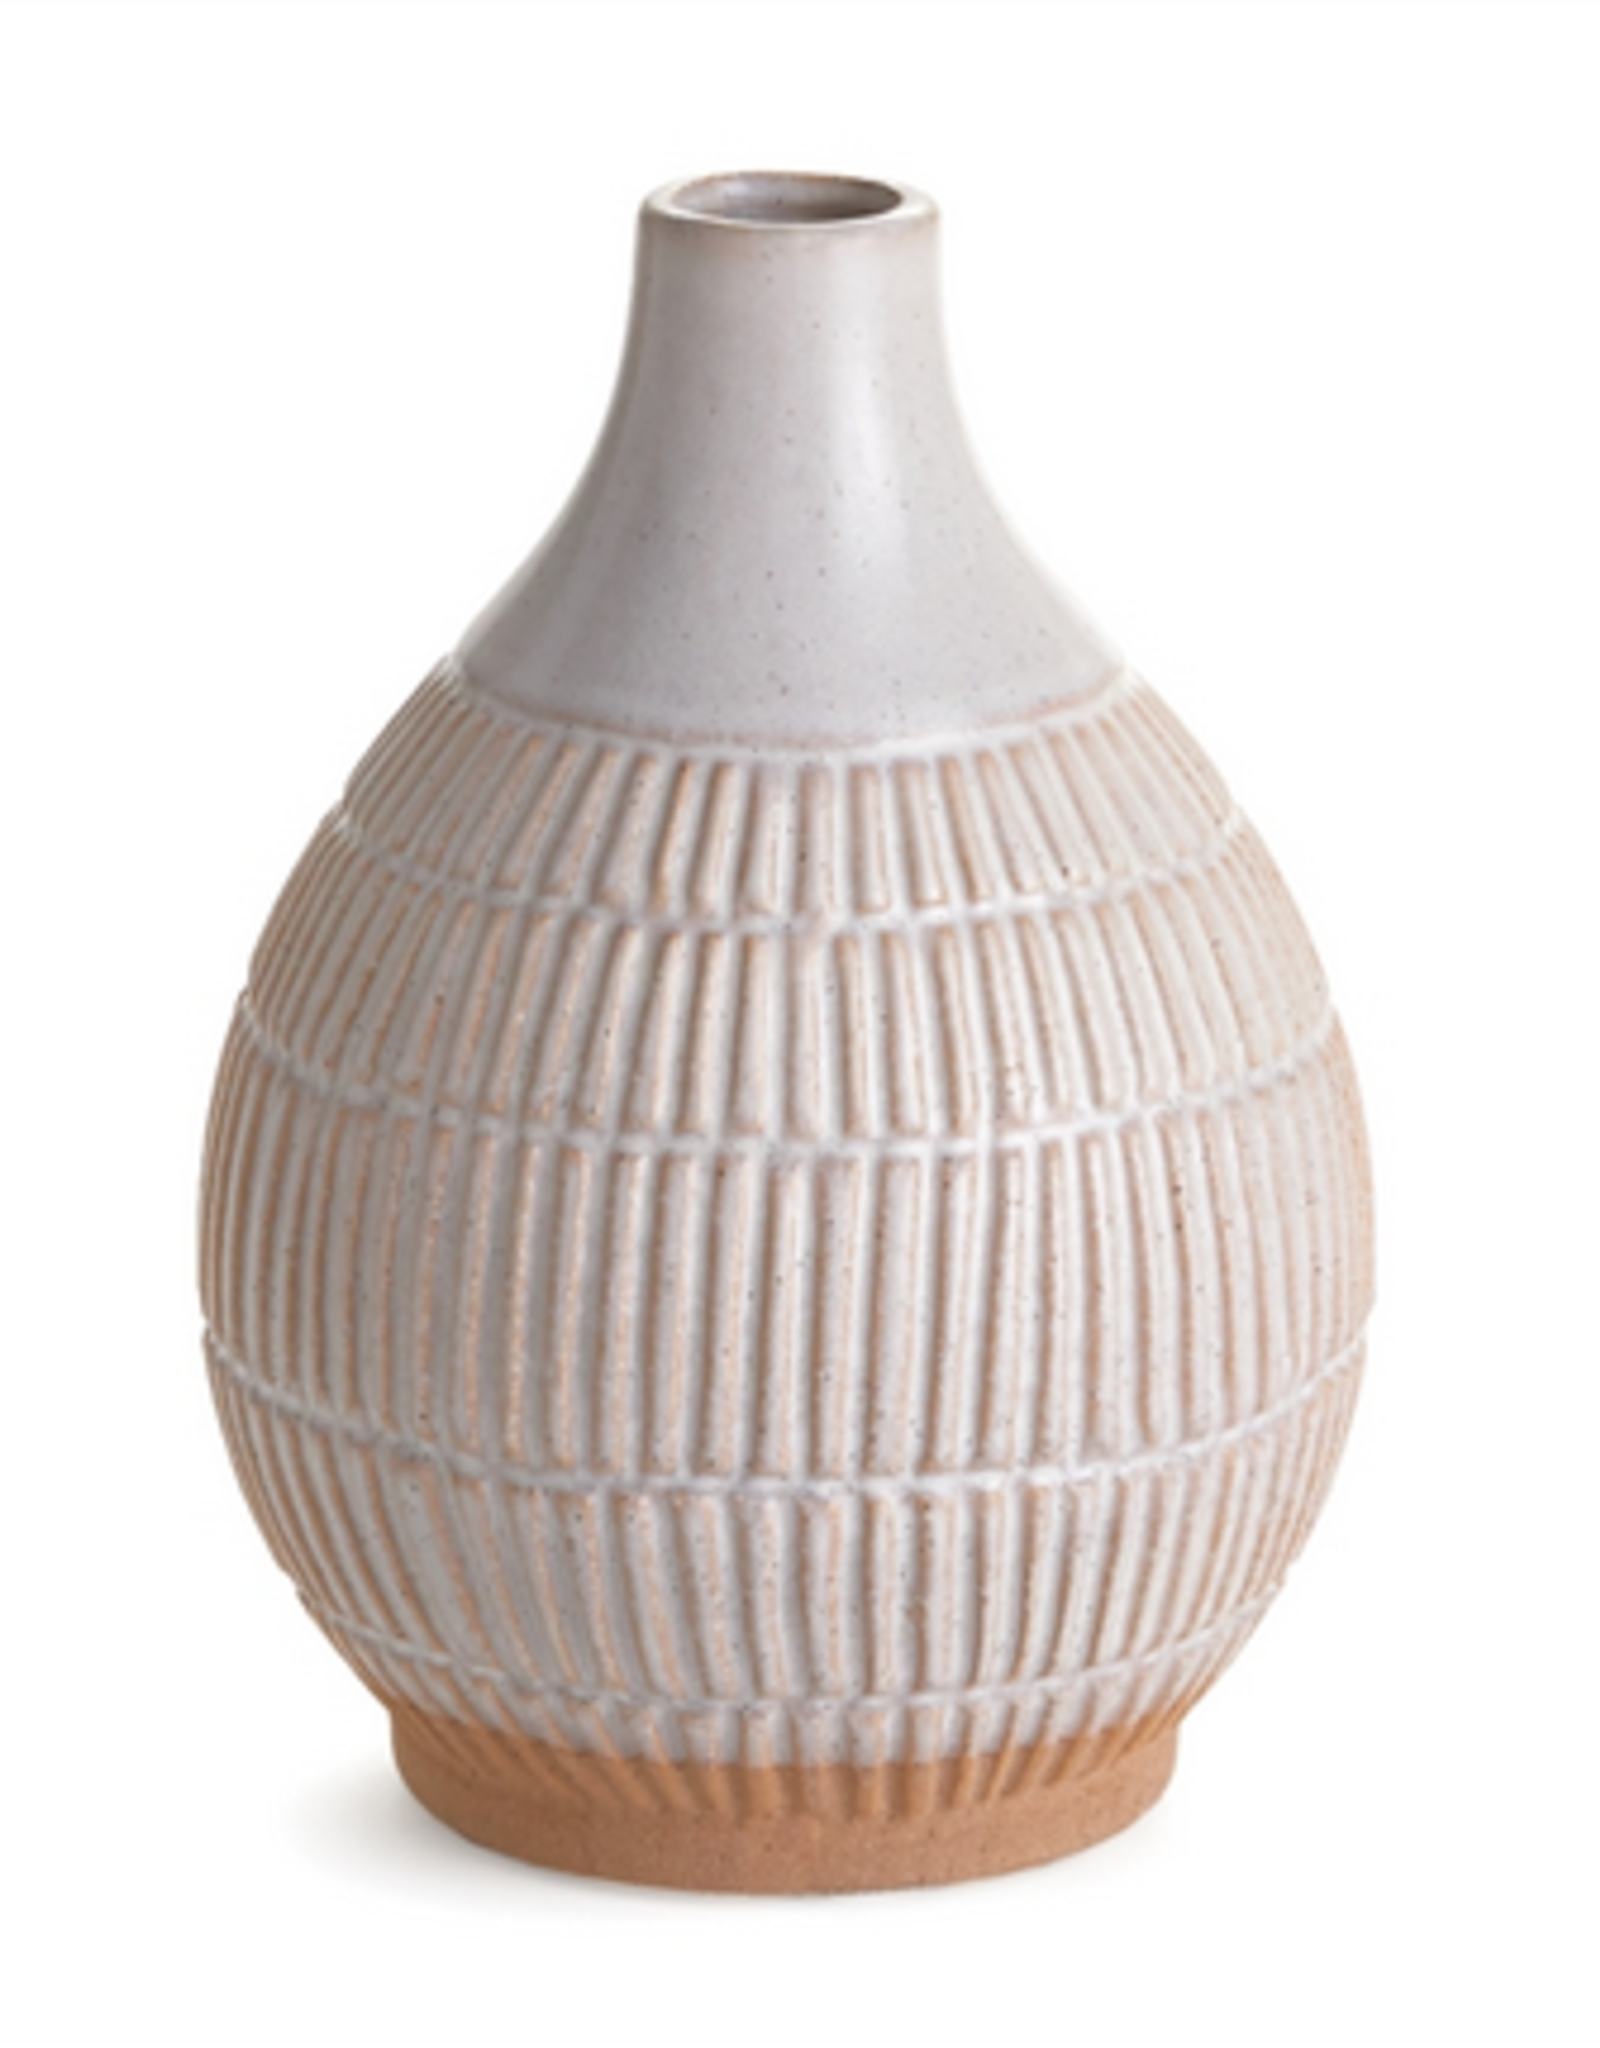 Harper Teardrop Vase D6.75" H9"